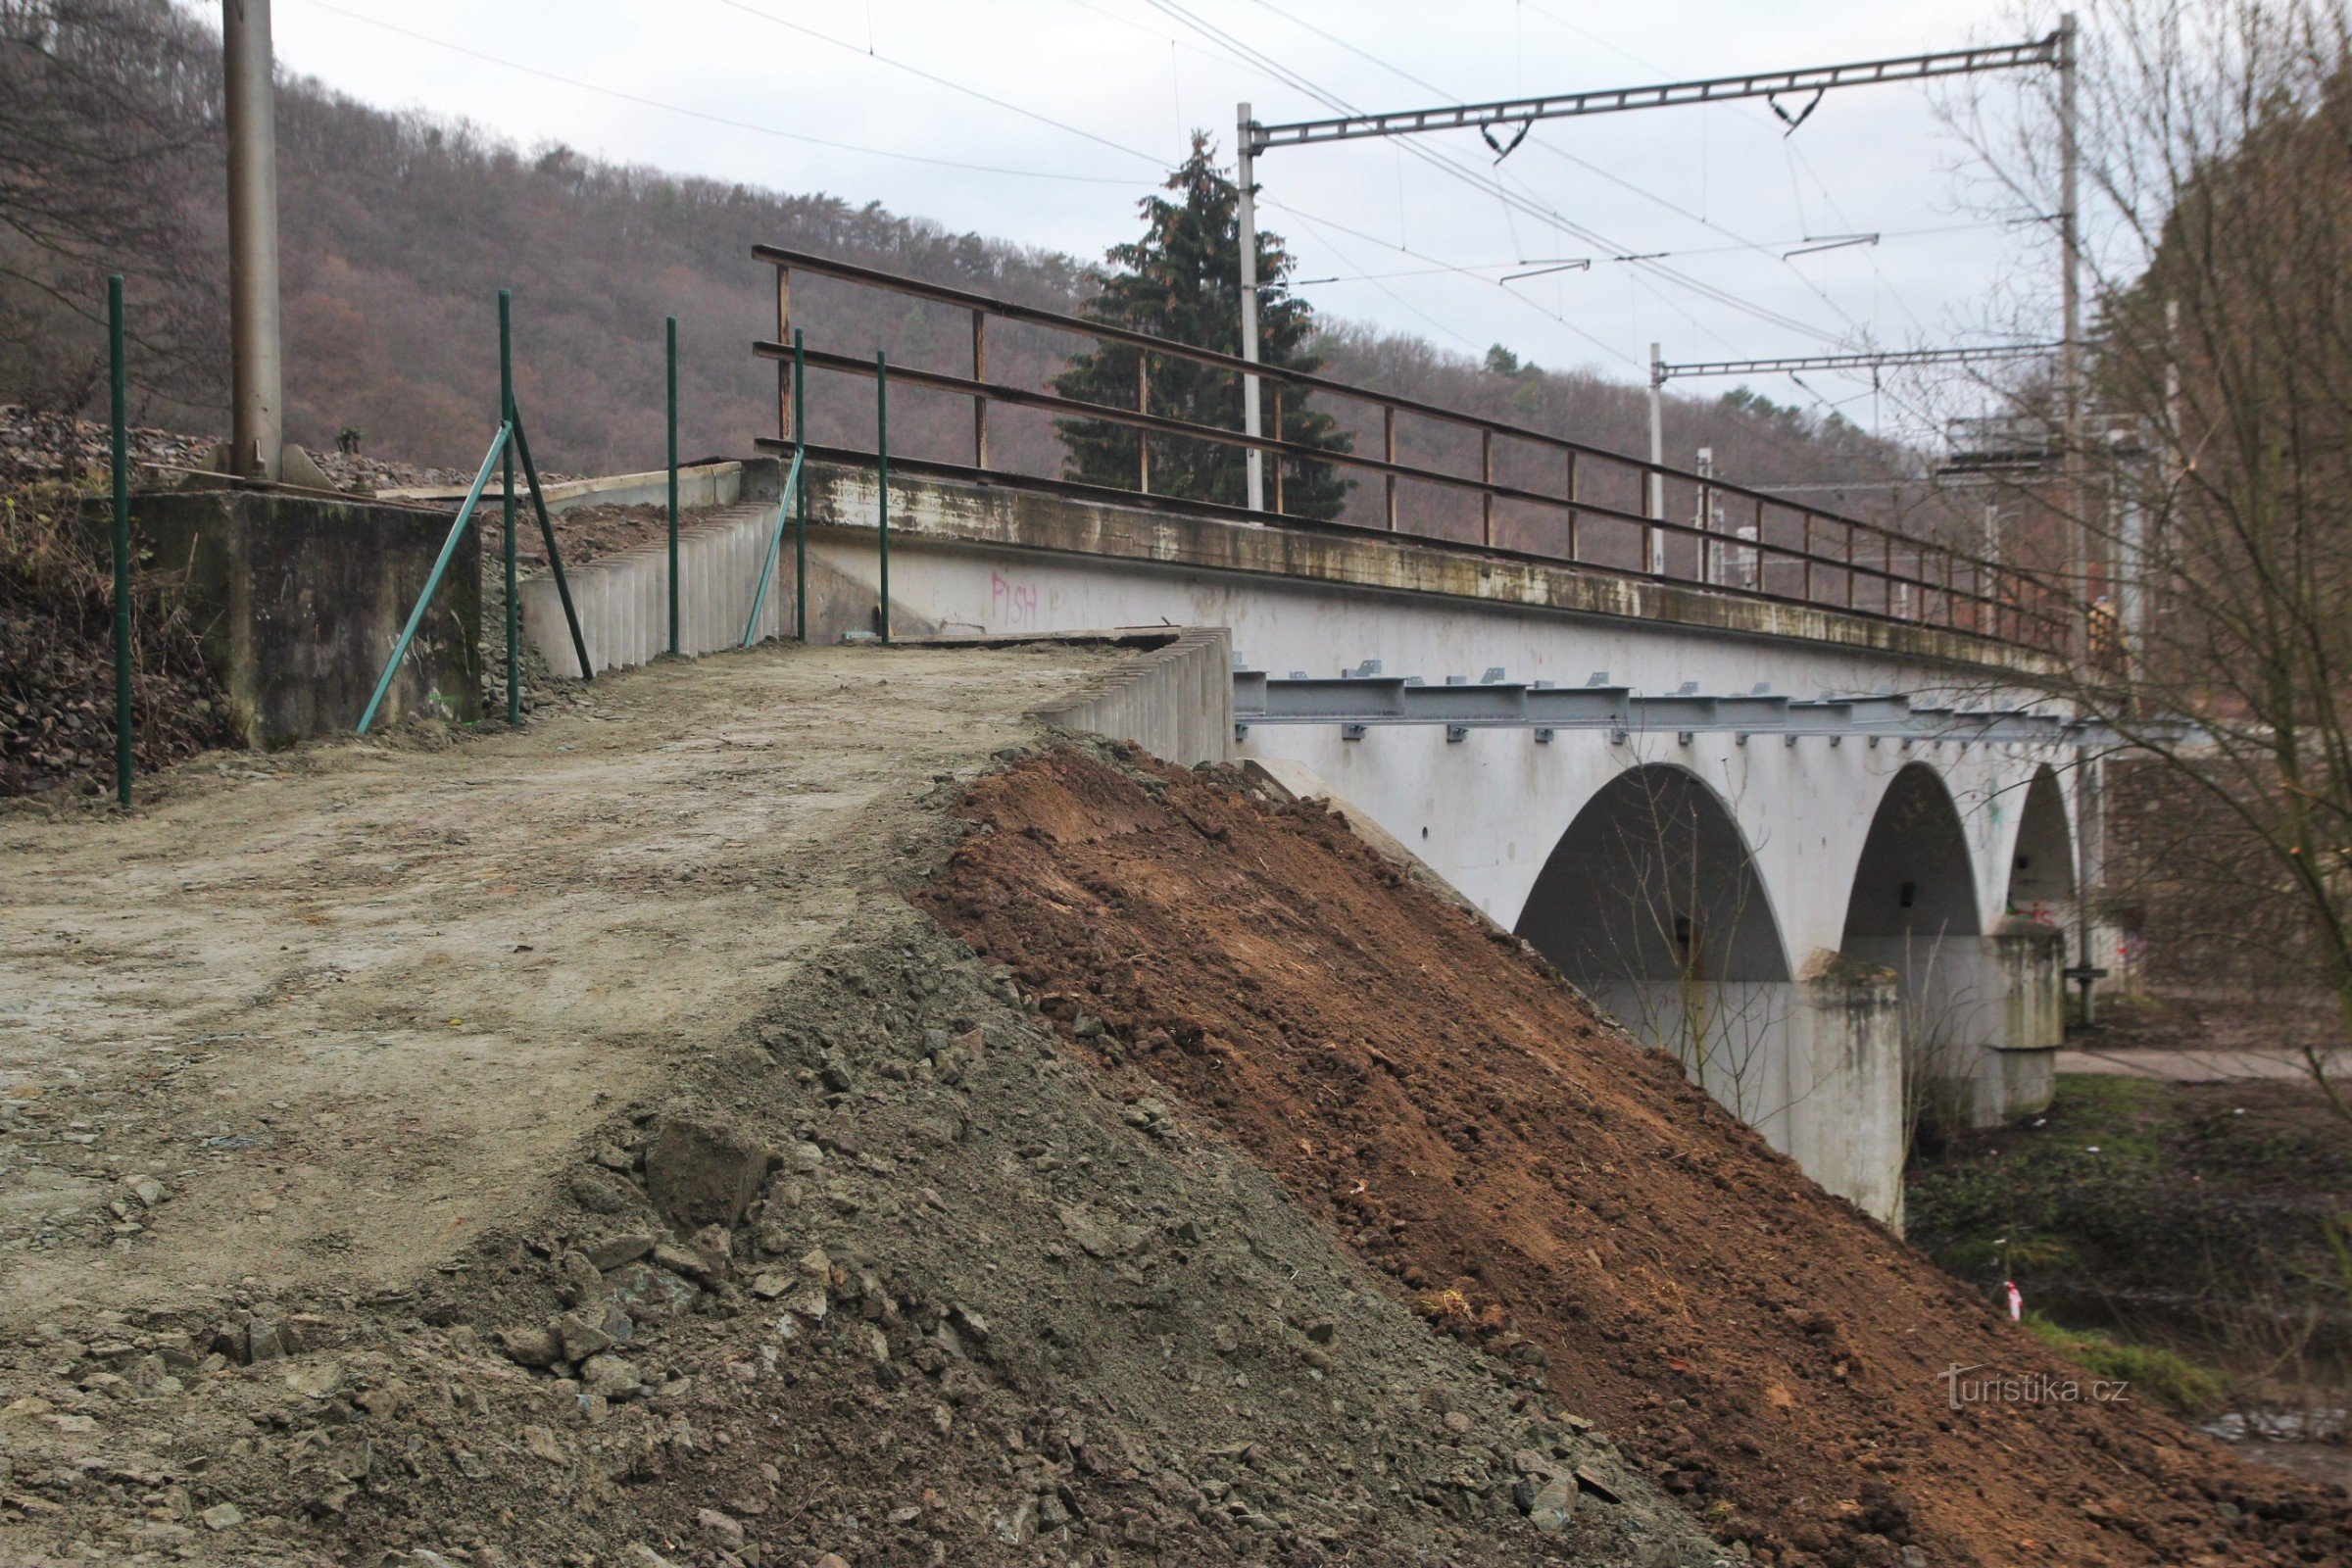 En gangbro er efterhånden bygget ind i jernbanebroens væg